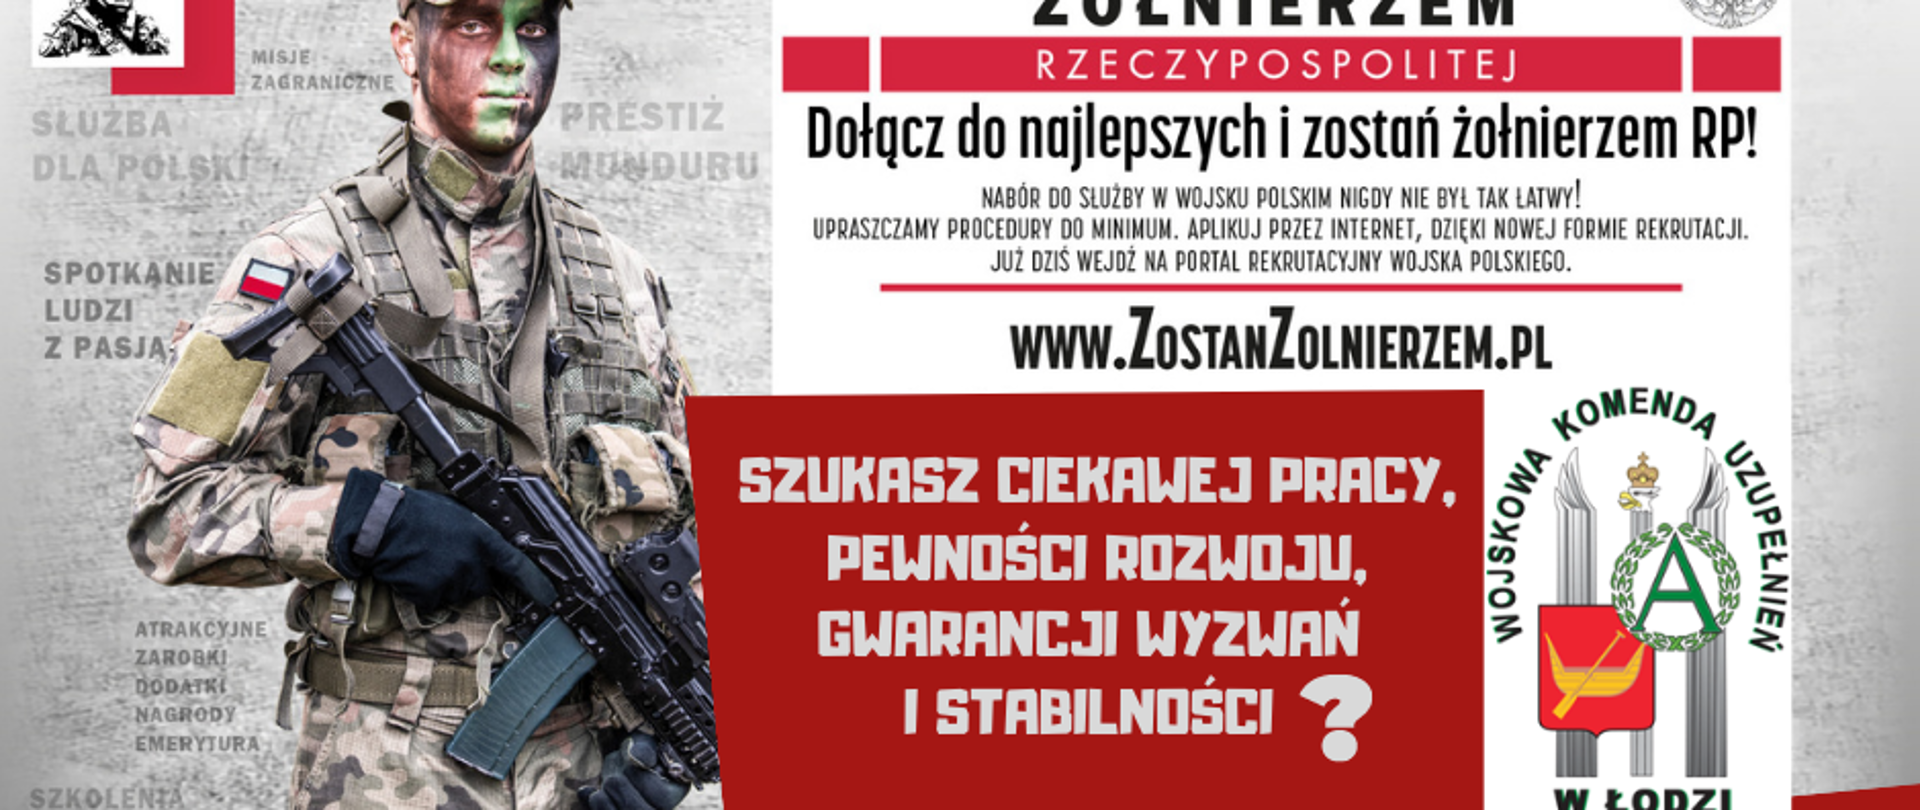 Plakat akcji promocyjnej "Zostań żołnierzem". Na czerwonym tle zdjęcie żołnierza informacje jak zostać żołnierzem. www.zostanzolnierzem.pl